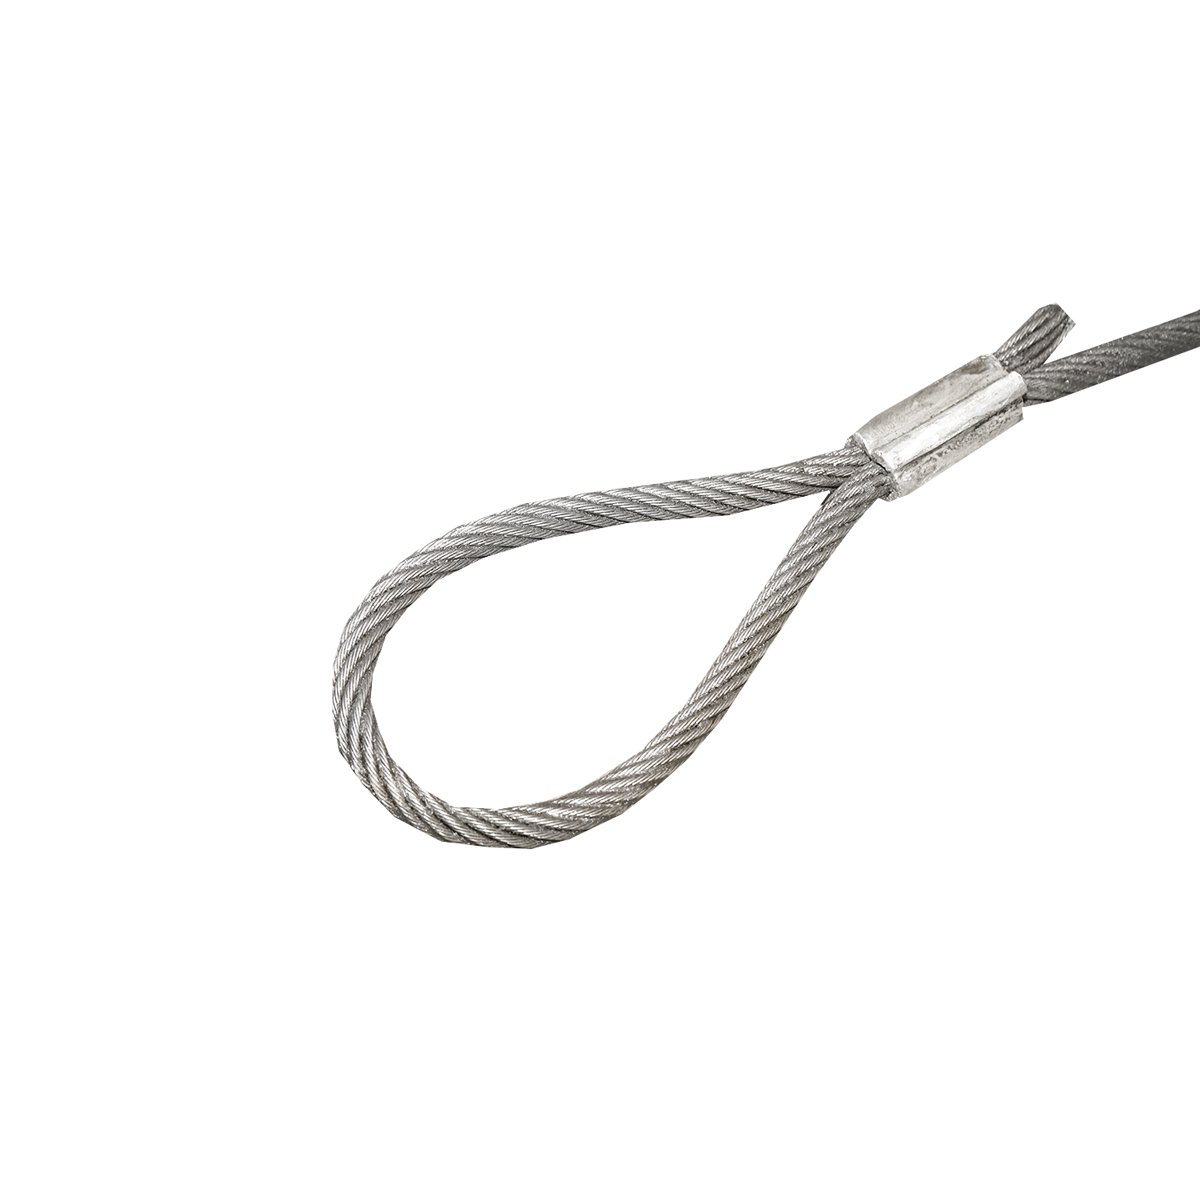 Cablu/sufa troliu din otel cu grosime 12mm si lungime 4m, carlig si inel pentru tractat sau ridicat